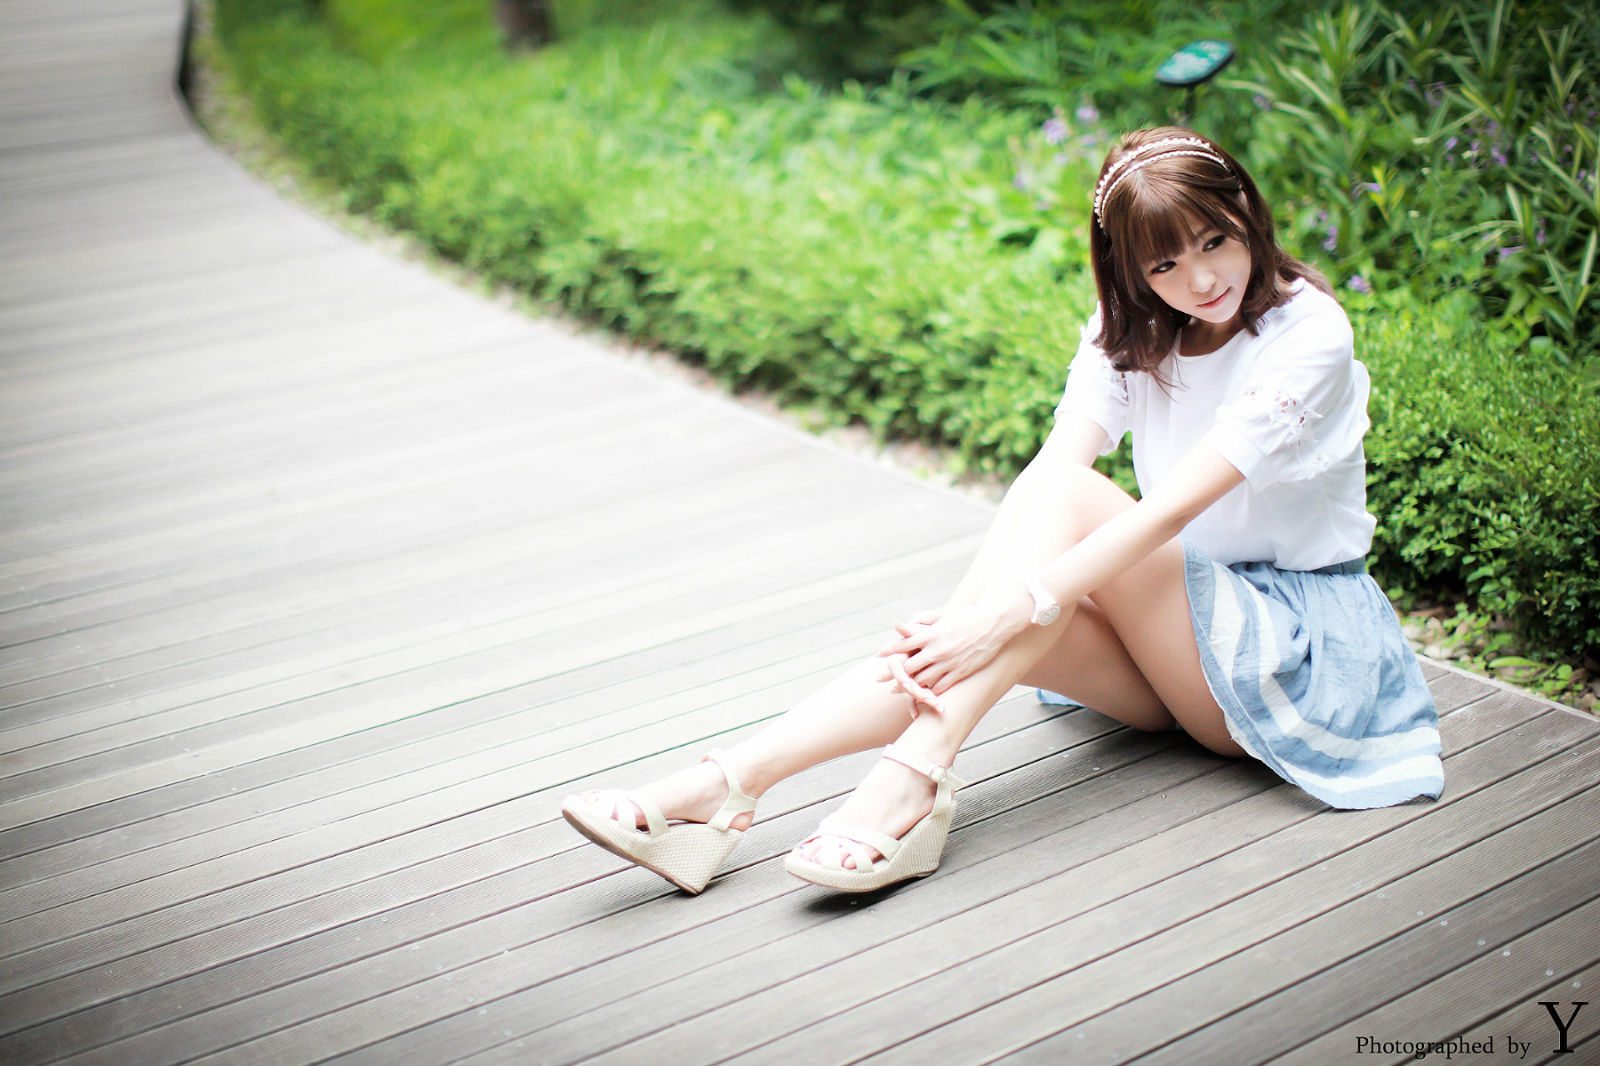 Li Enhui “Park short skirt outside shoot” [Korean beauty] photo set